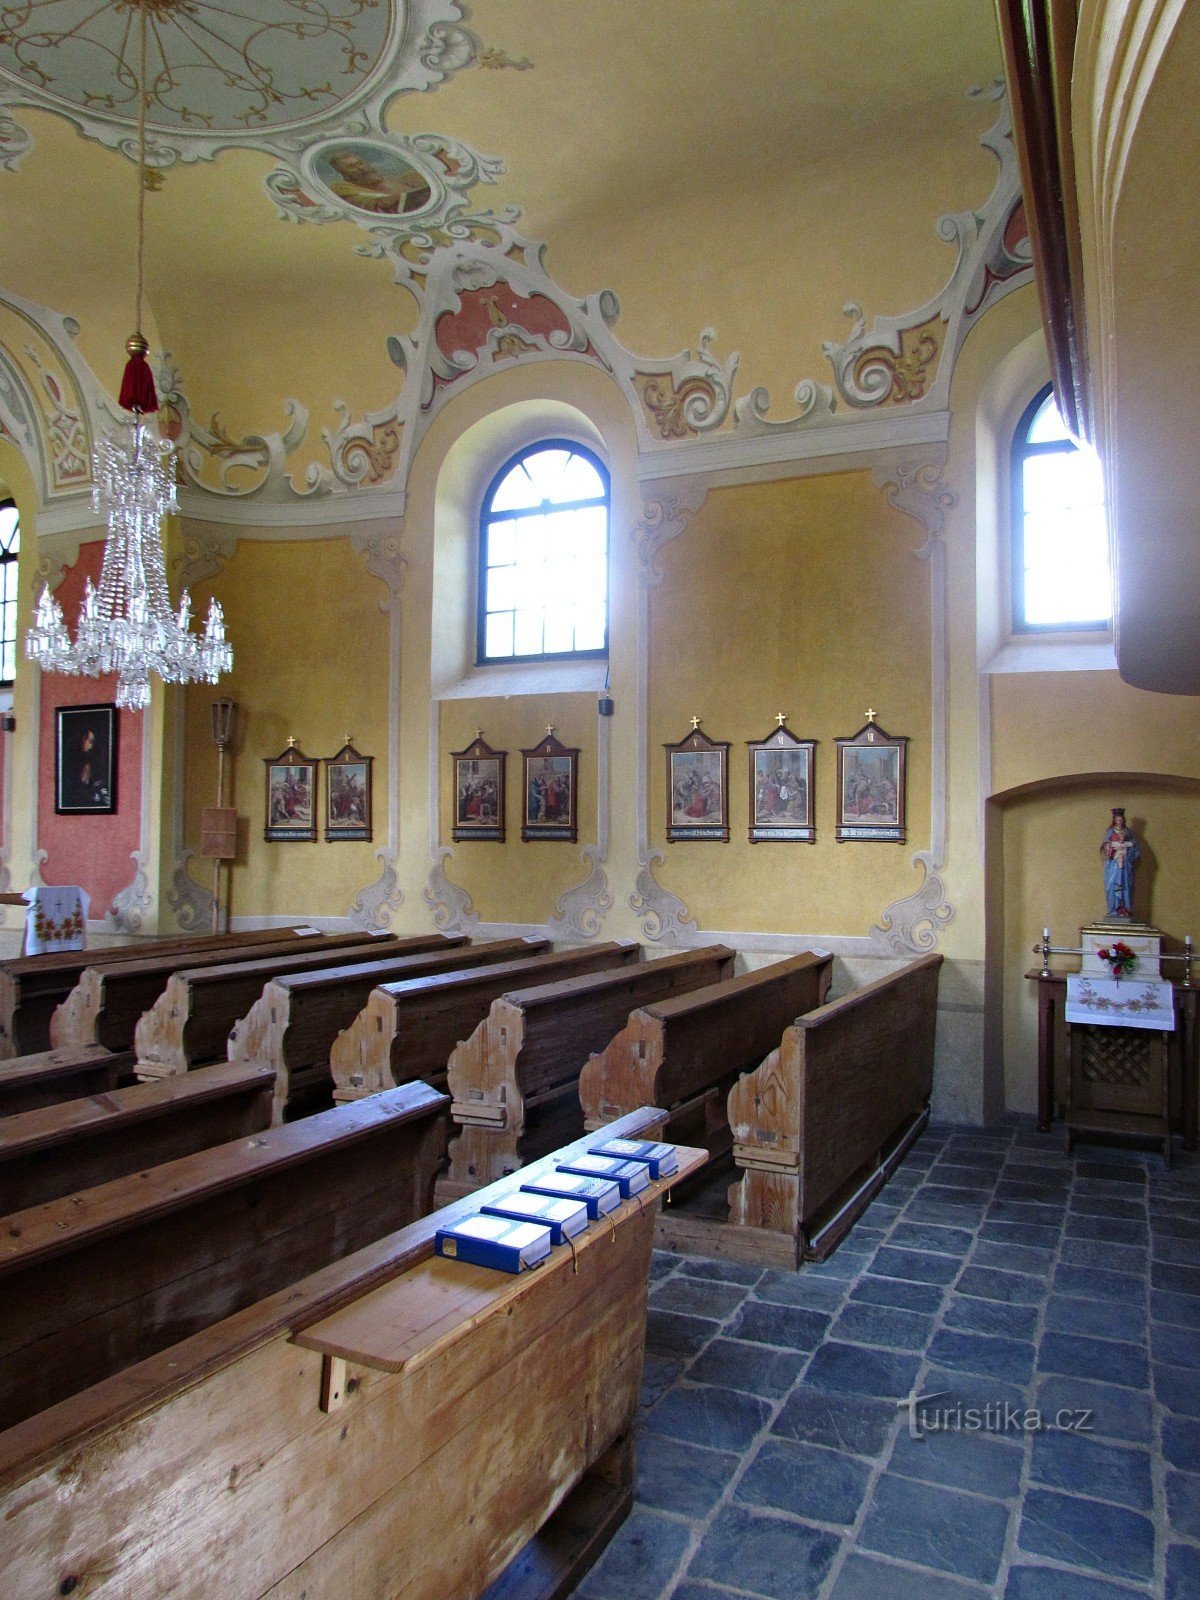 Ludvíkov - Nhà thờ Đức mẹ Maria thăm viếng